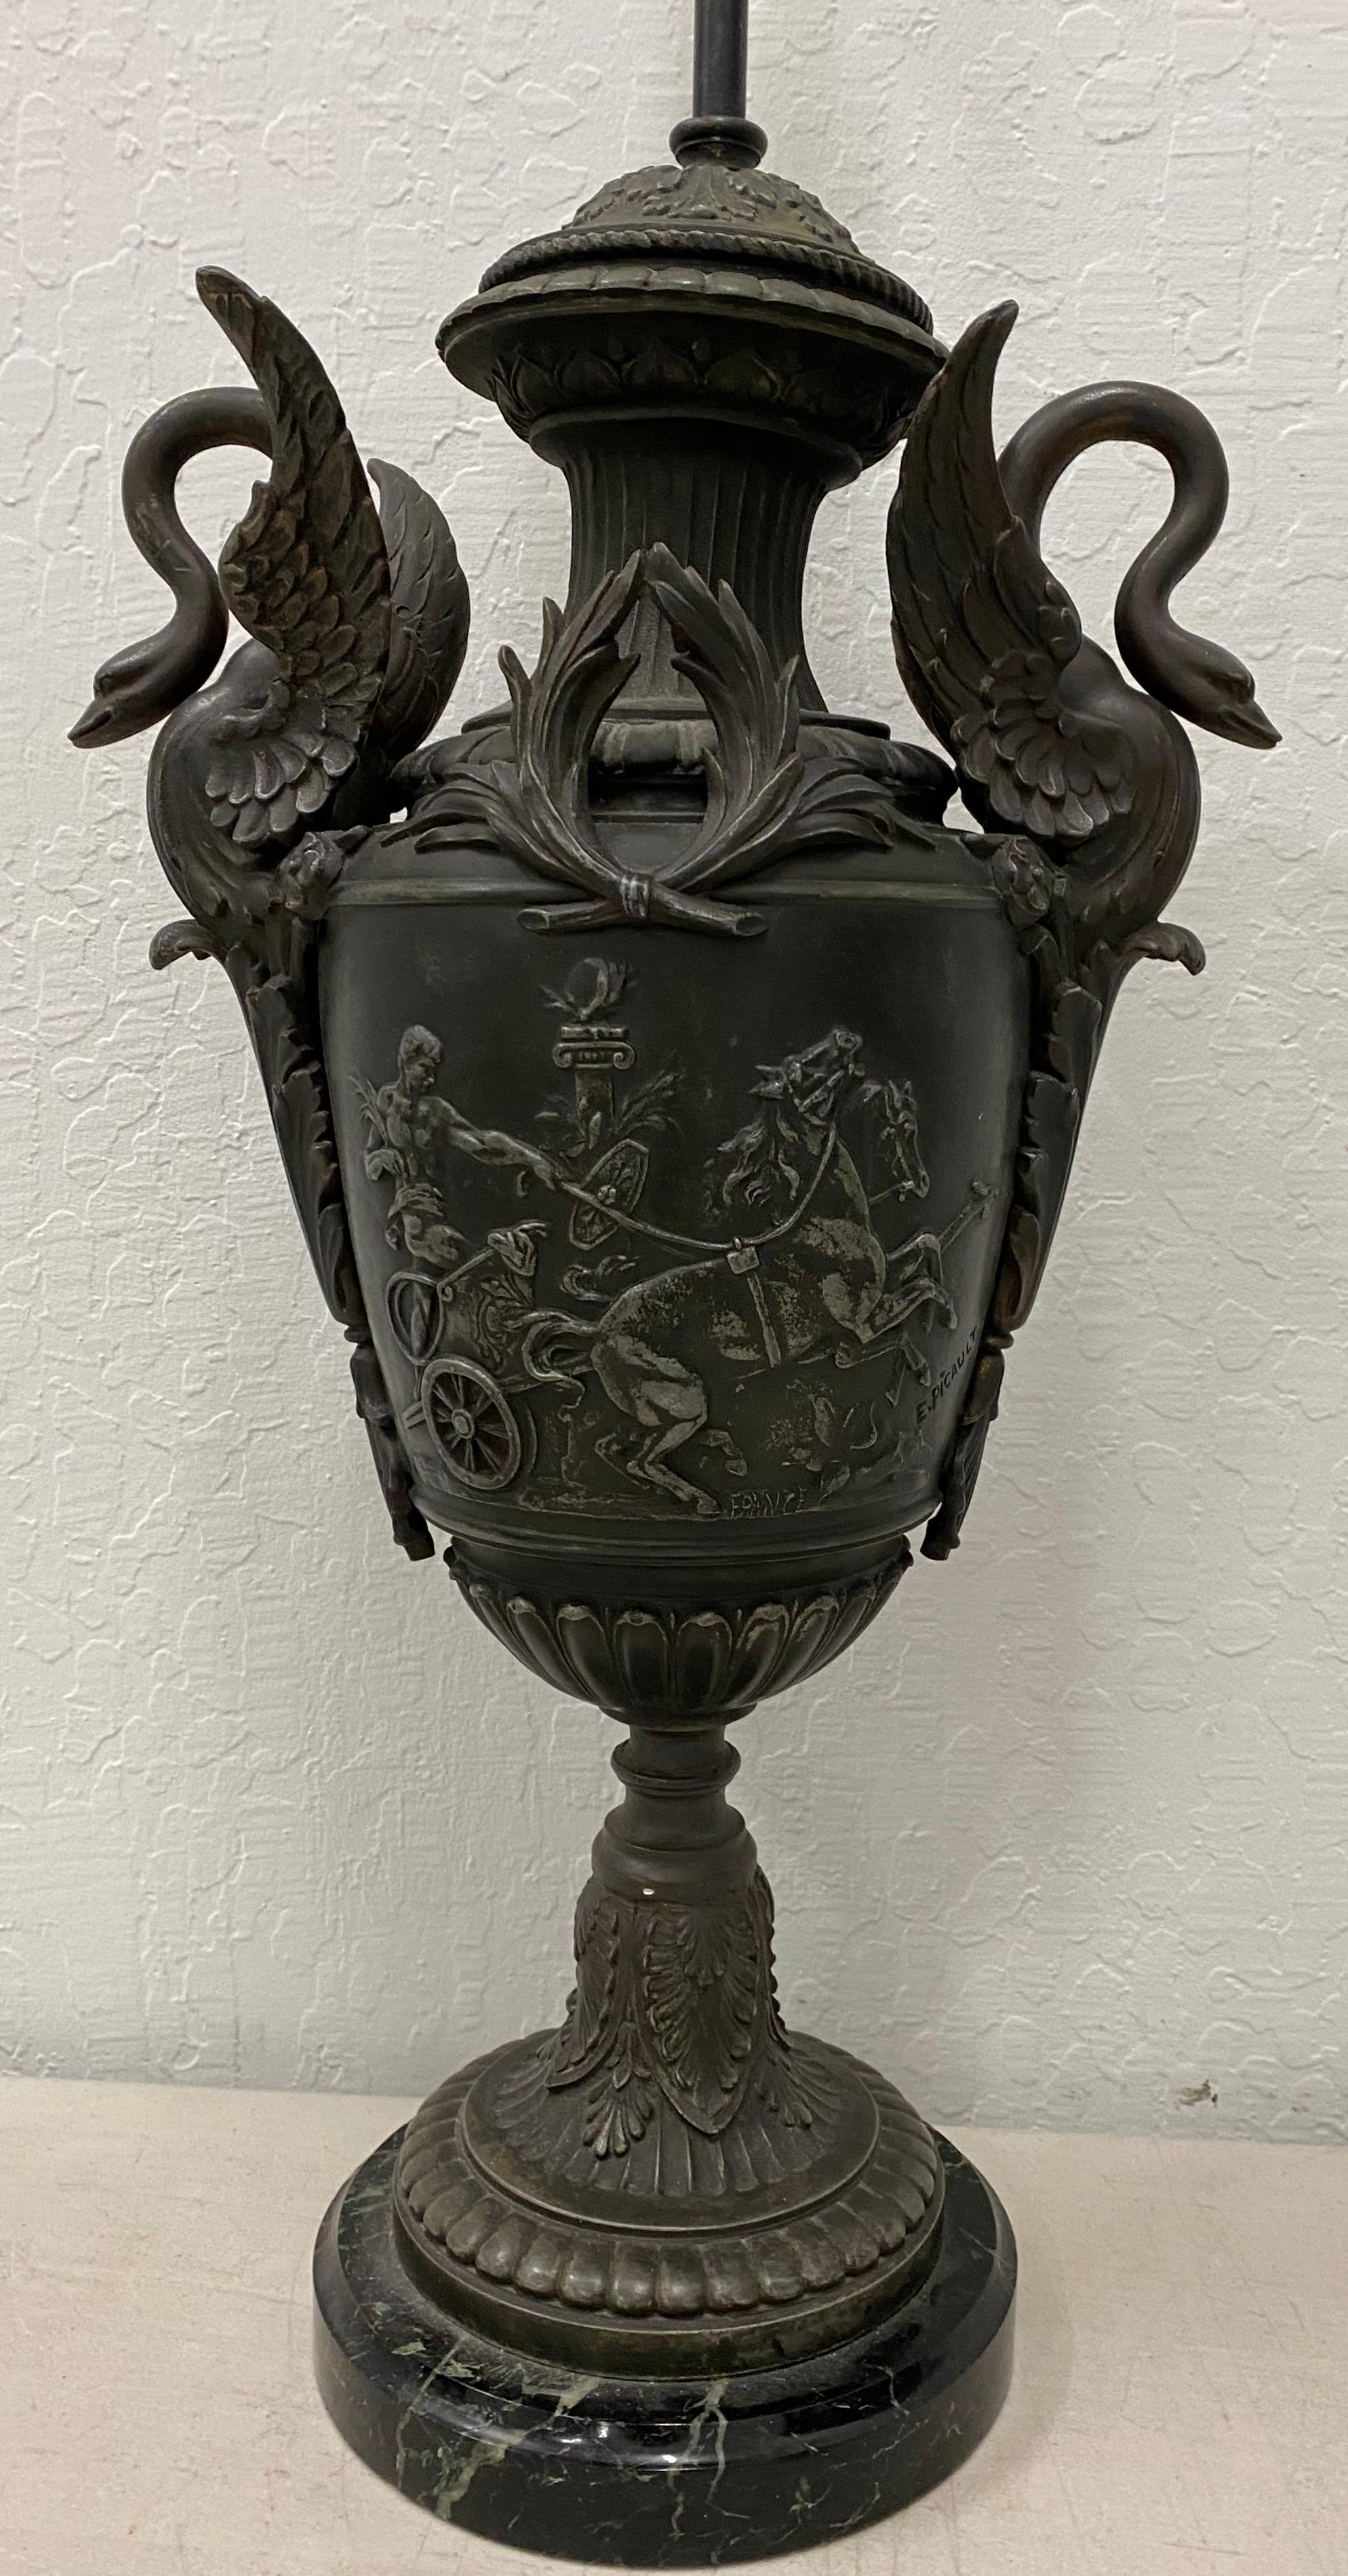 Klassische Urnen-Tischlampe aus Metallguss, ca. 1940er Jahre

8